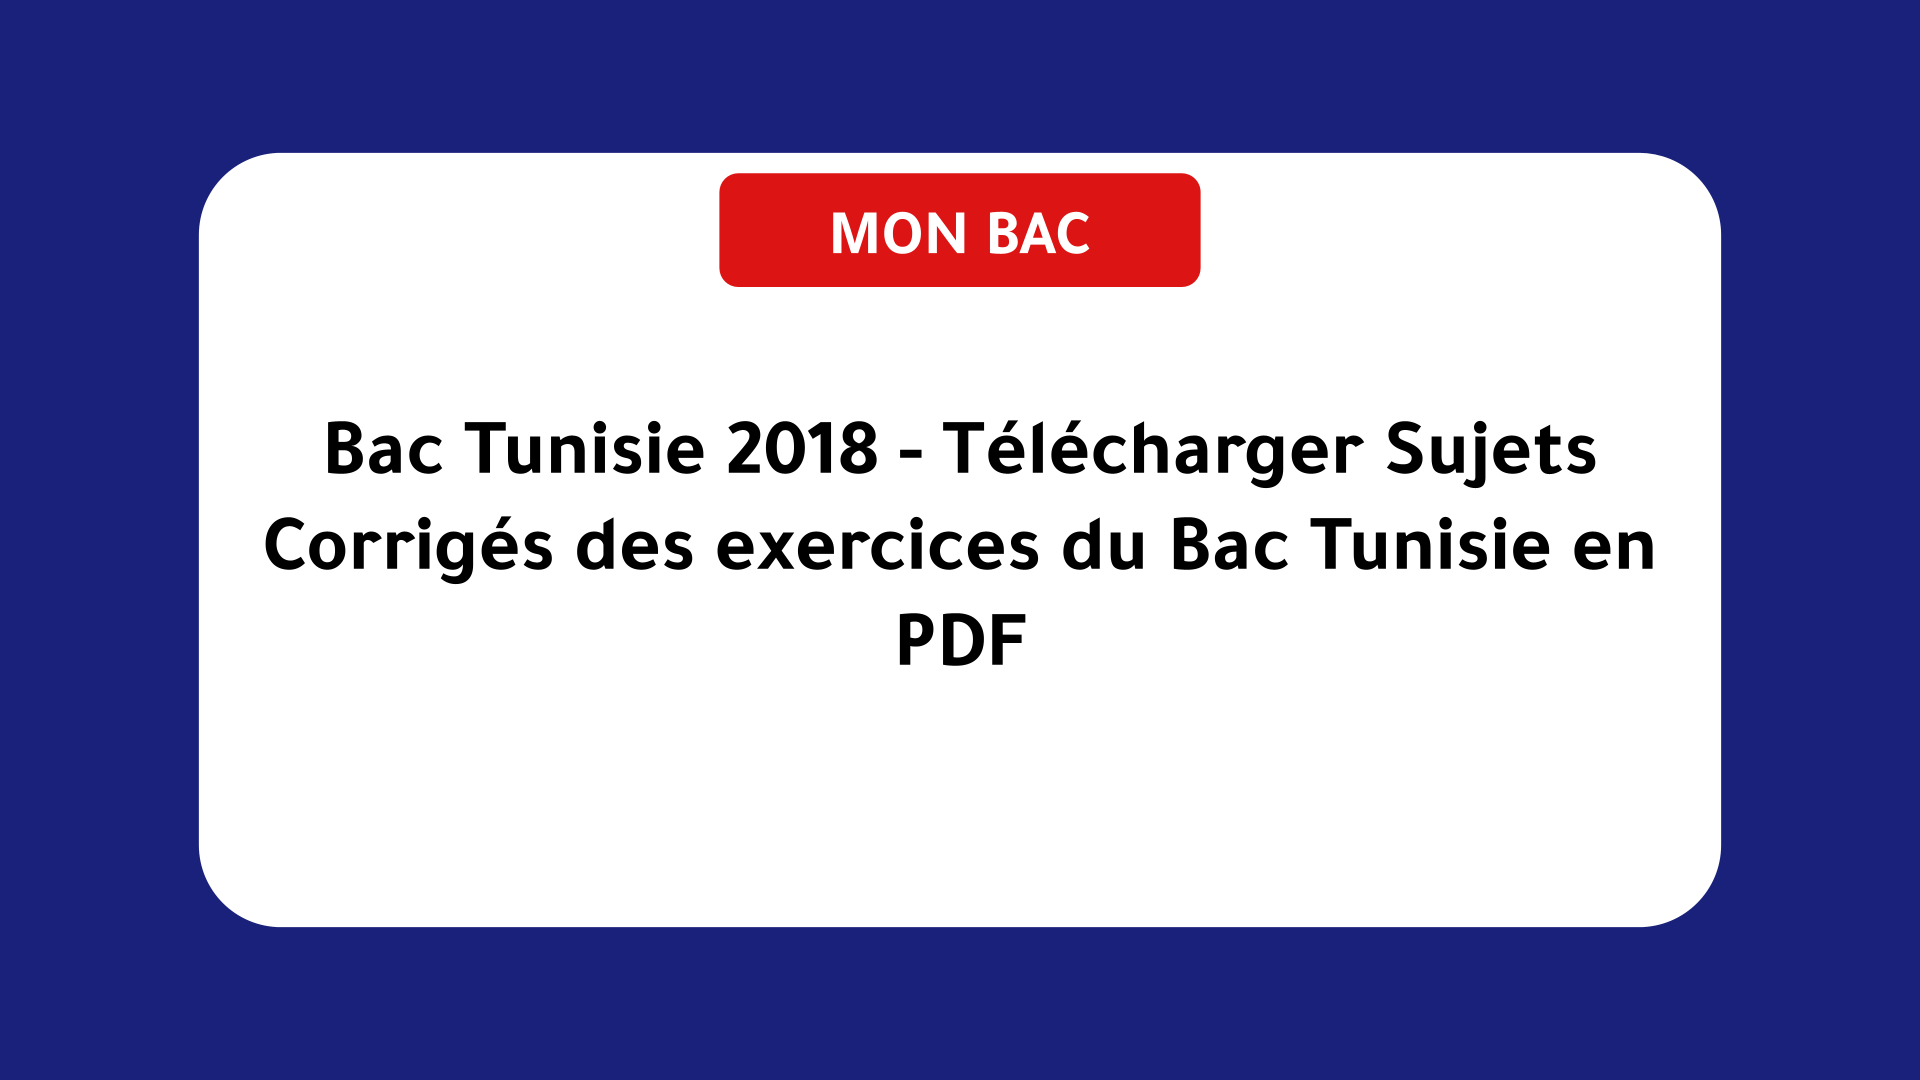 Bac Tunisie 2018 - Télécharger Sujets Corrigés des exercices du Bac Tunisie en PDF